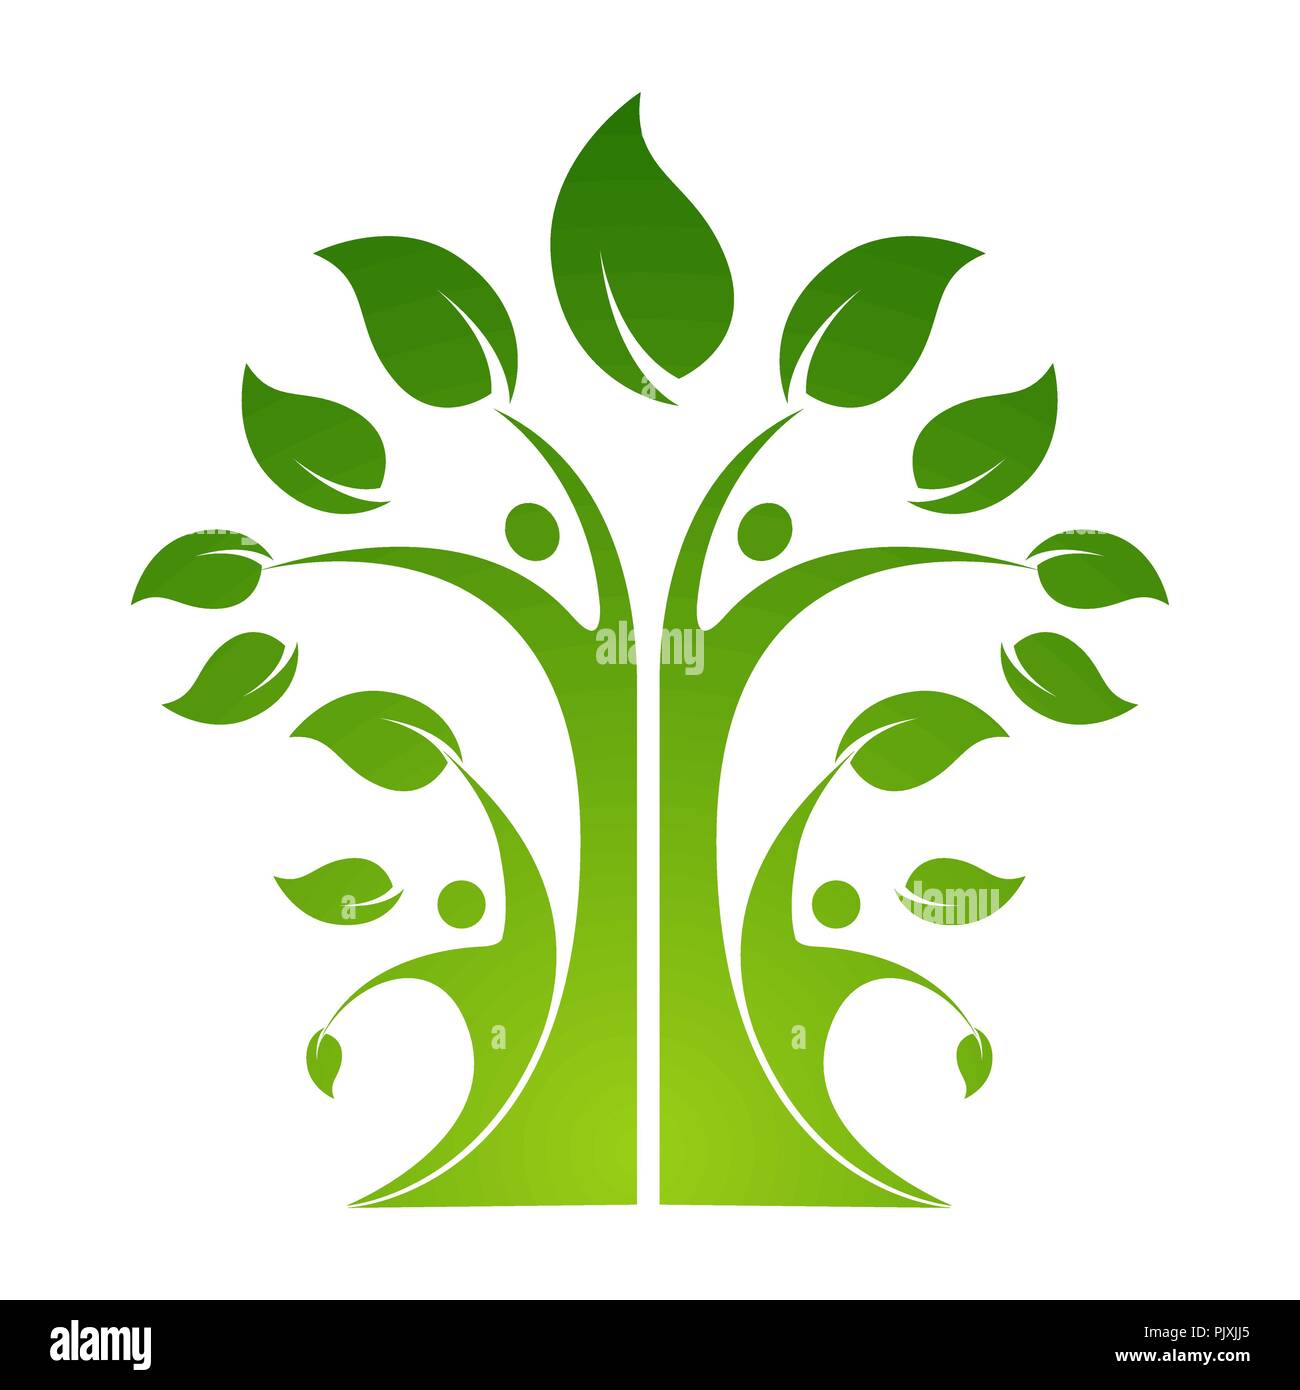 Freundschaft kleben zusammen organischen Menschen logo Leute logo Baum logo Vektor logo Vorlage Stock Vektor